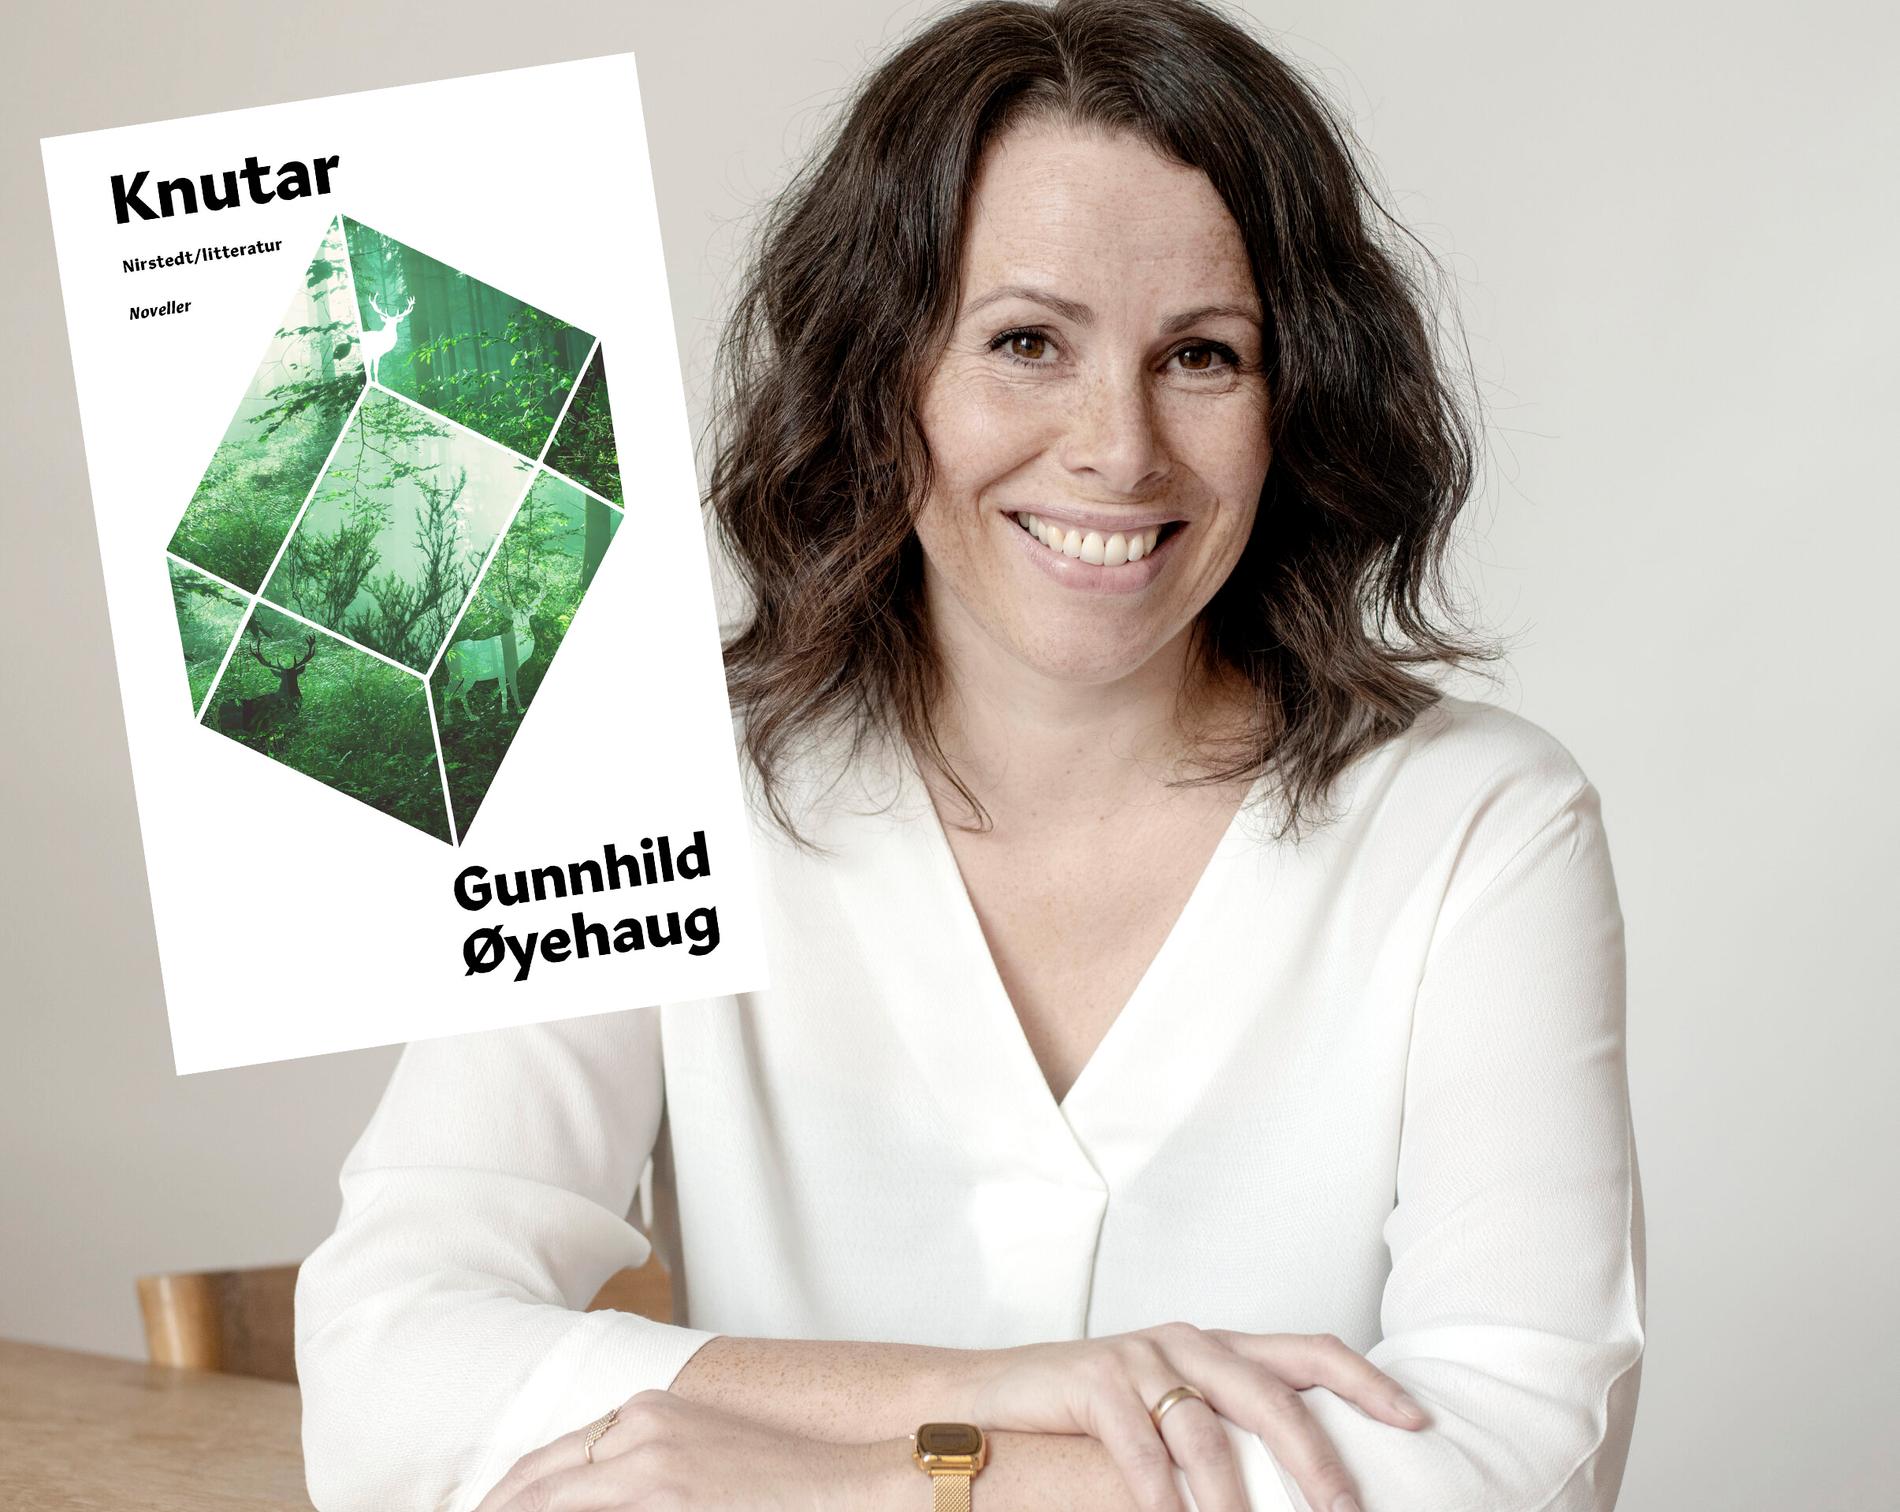 Gunnhild Øyehaug (född 1975) är en norsk författare. ”Knutar” utkom första gången 2004 och finns nu i svensk översättning.